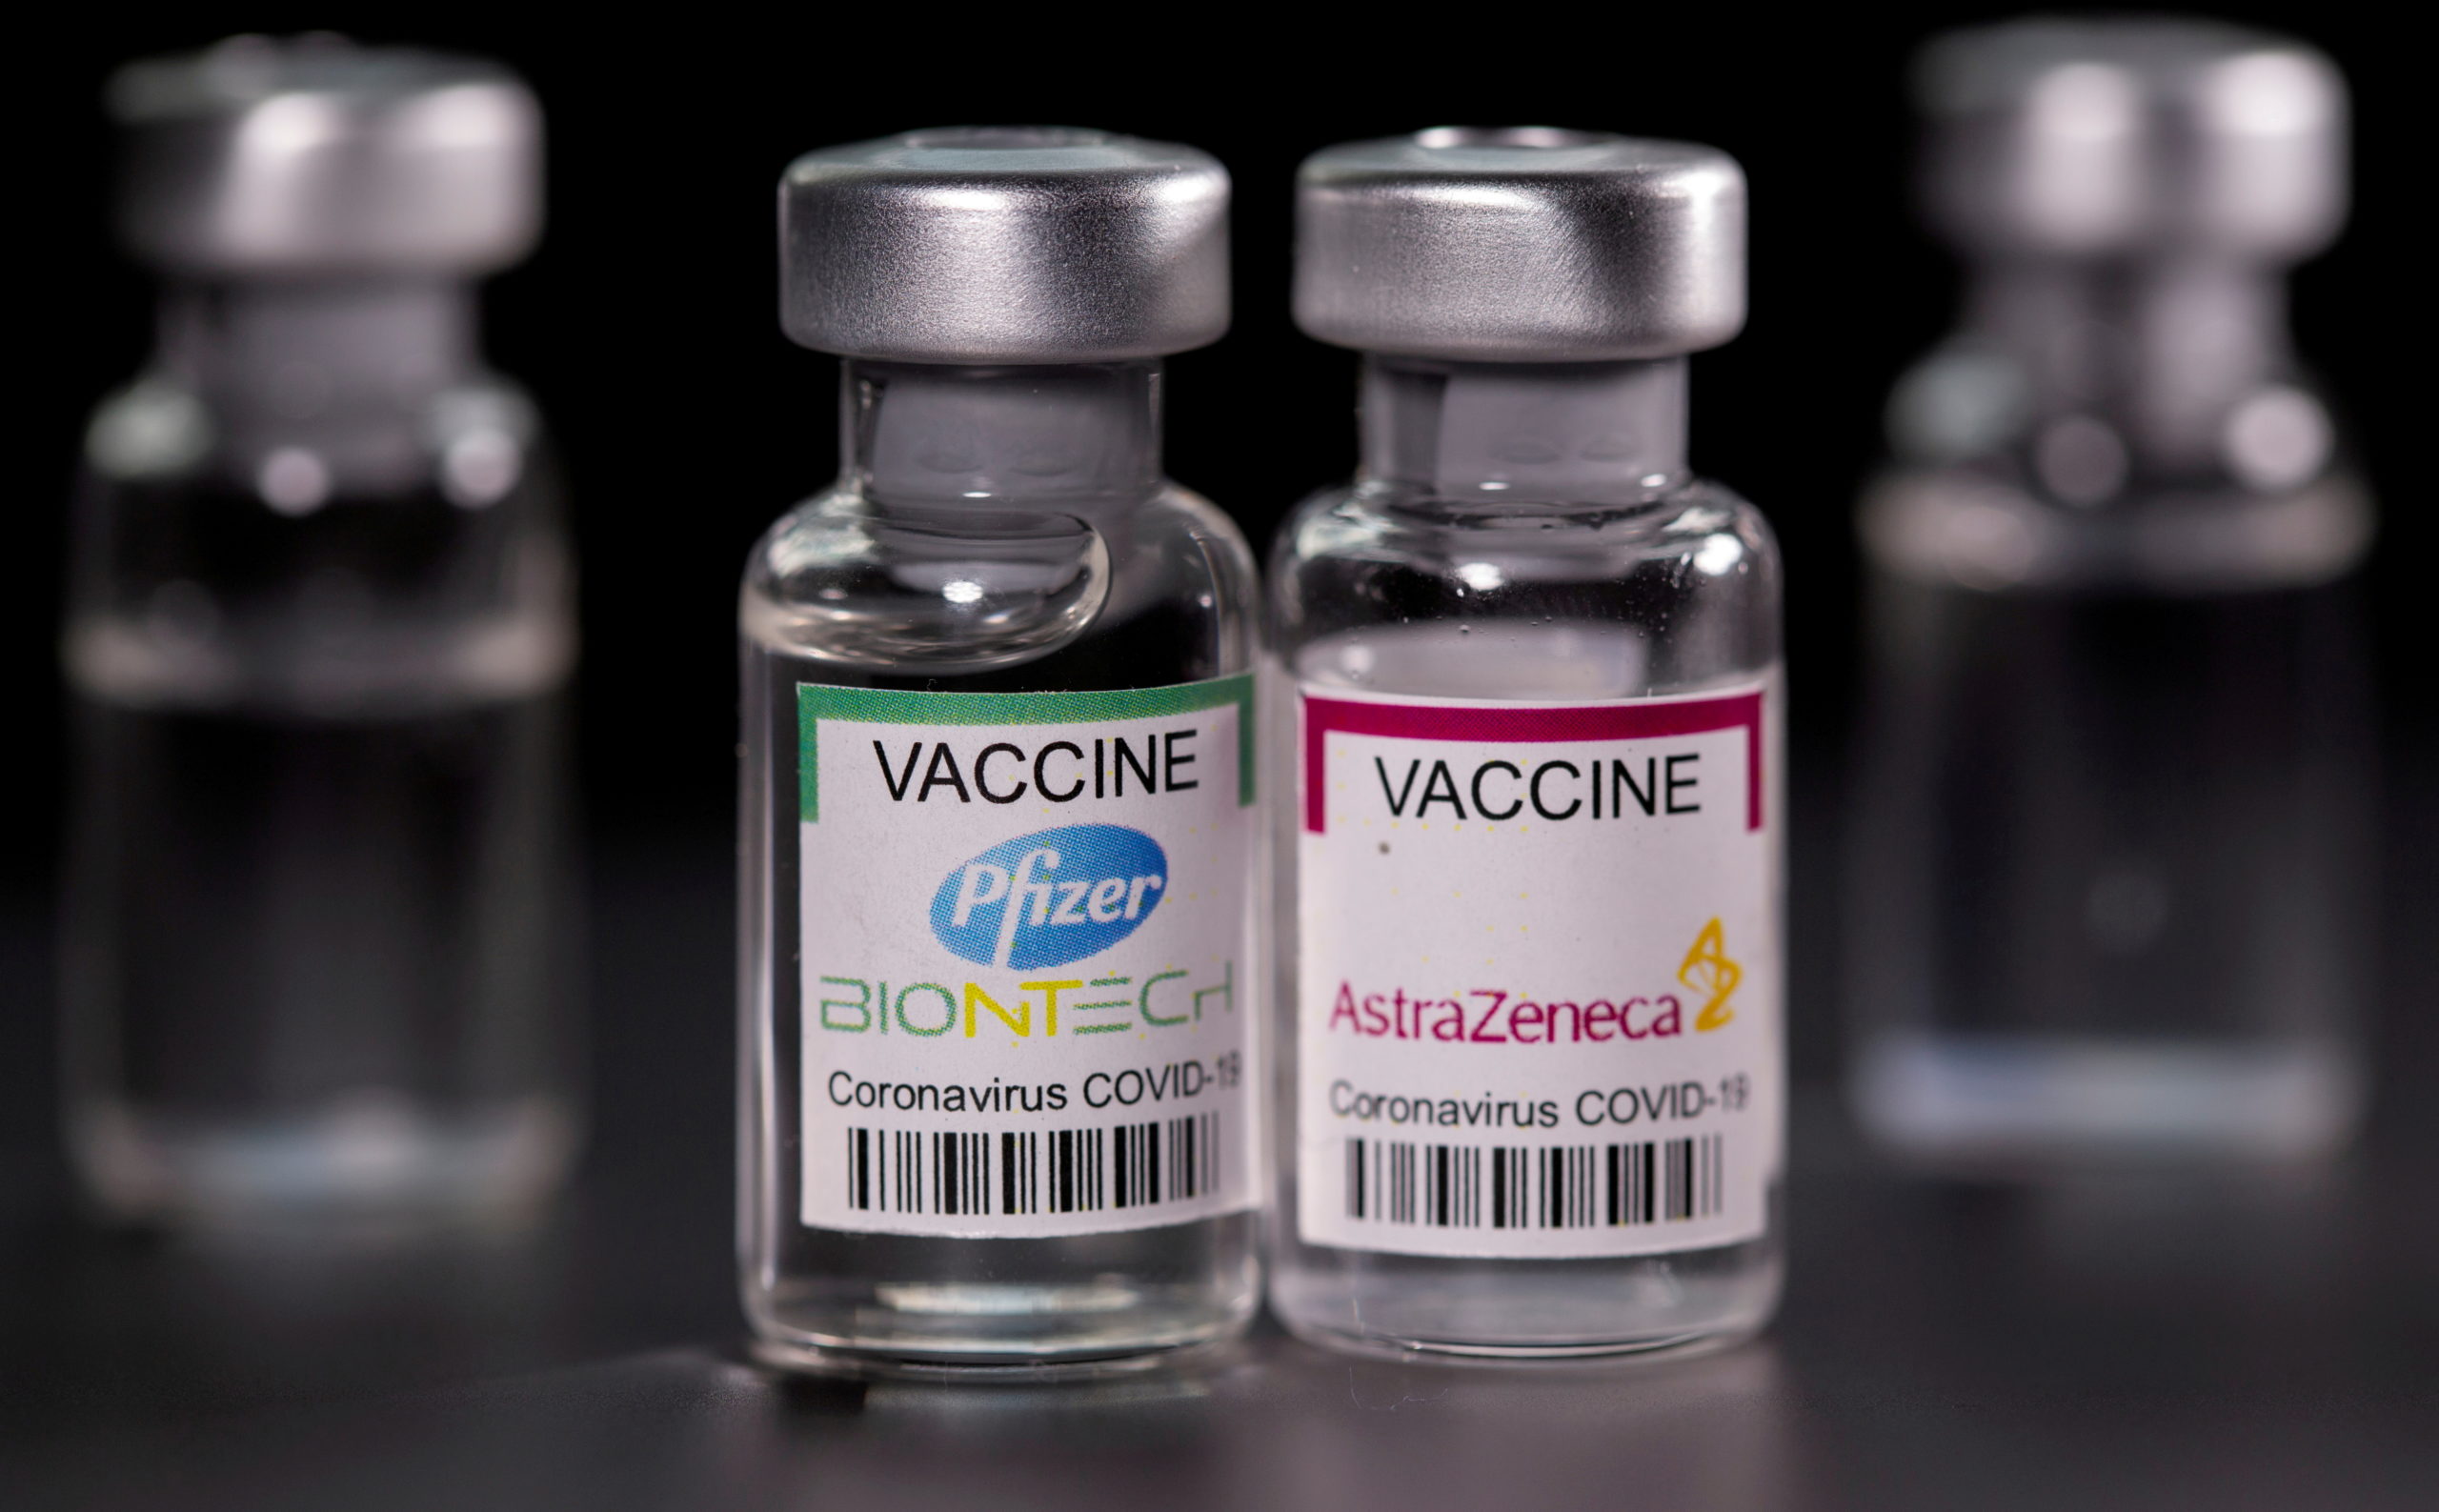 pfizer and astrazeneca covid-19 vaccines